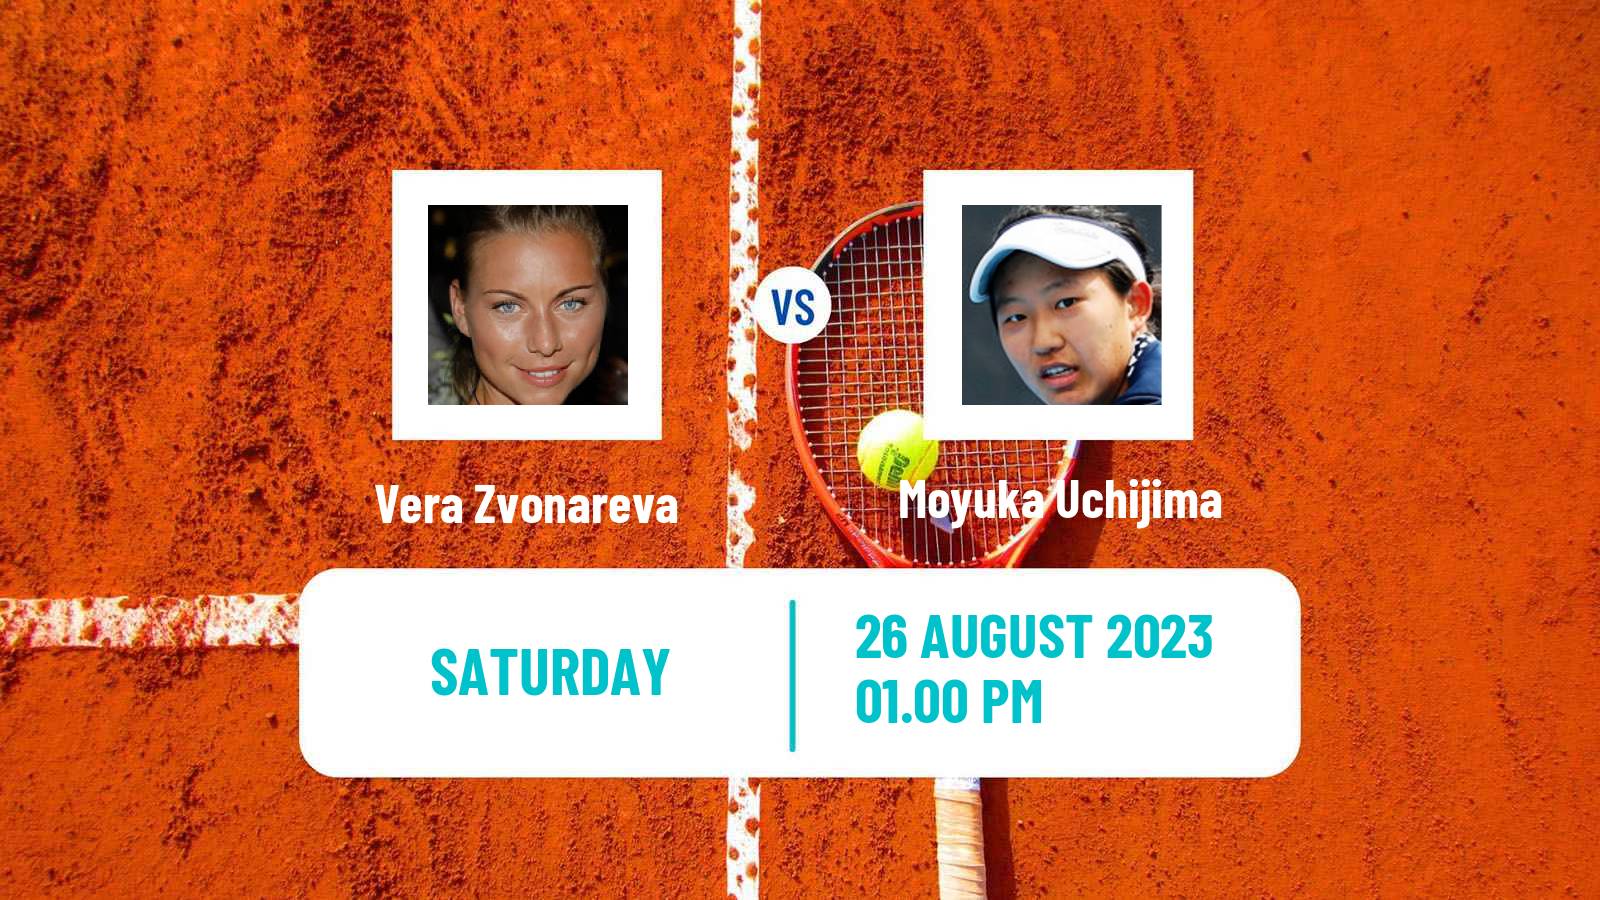 Tennis WTA US Open Vera Zvonareva - Moyuka Uchijima